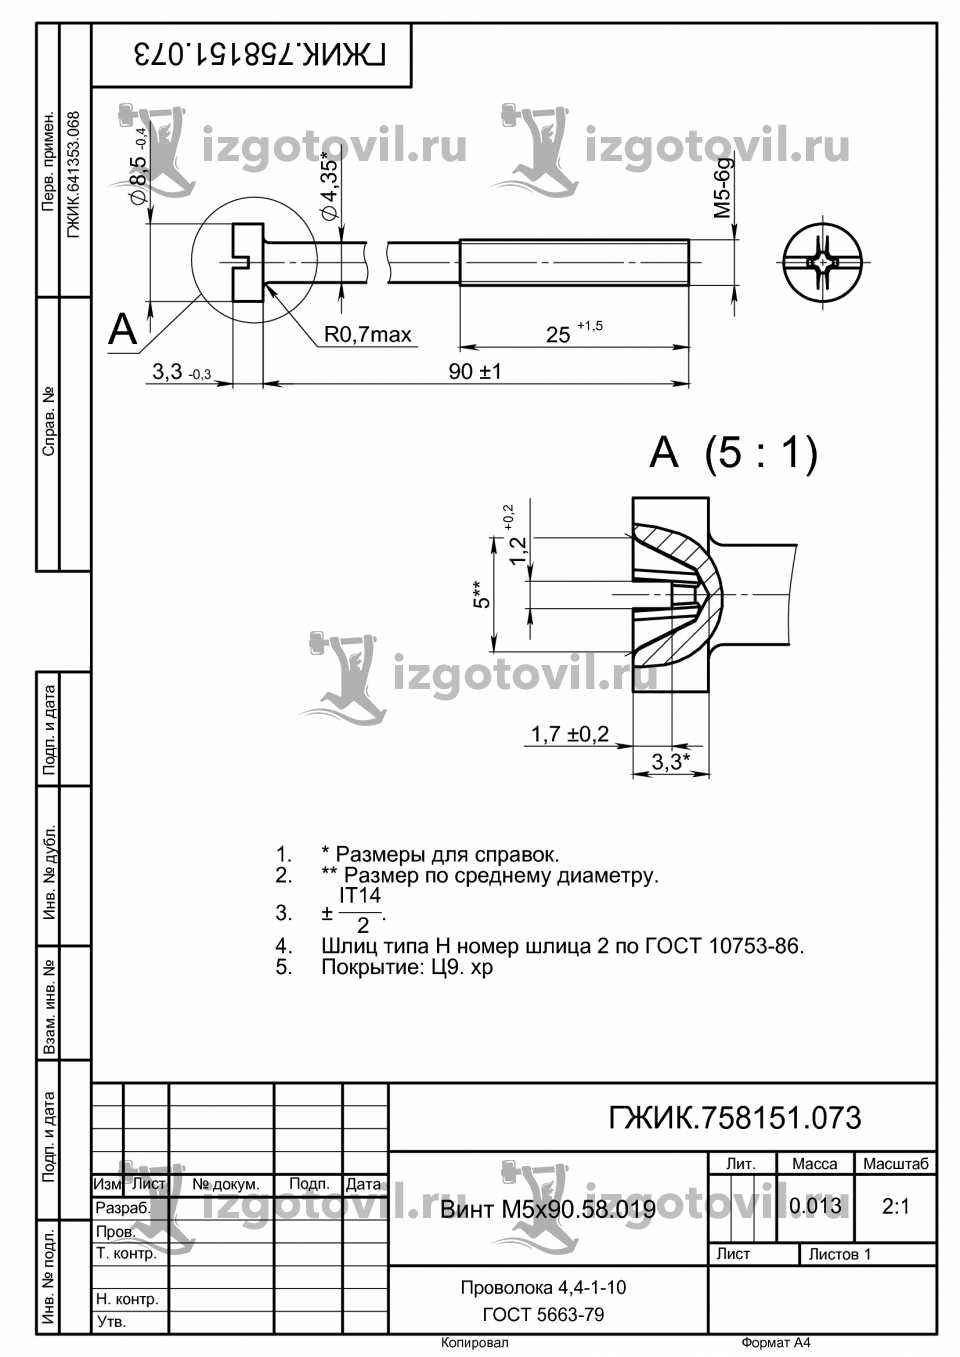 Токарная обработка деталей - Винт М5х90.58.019